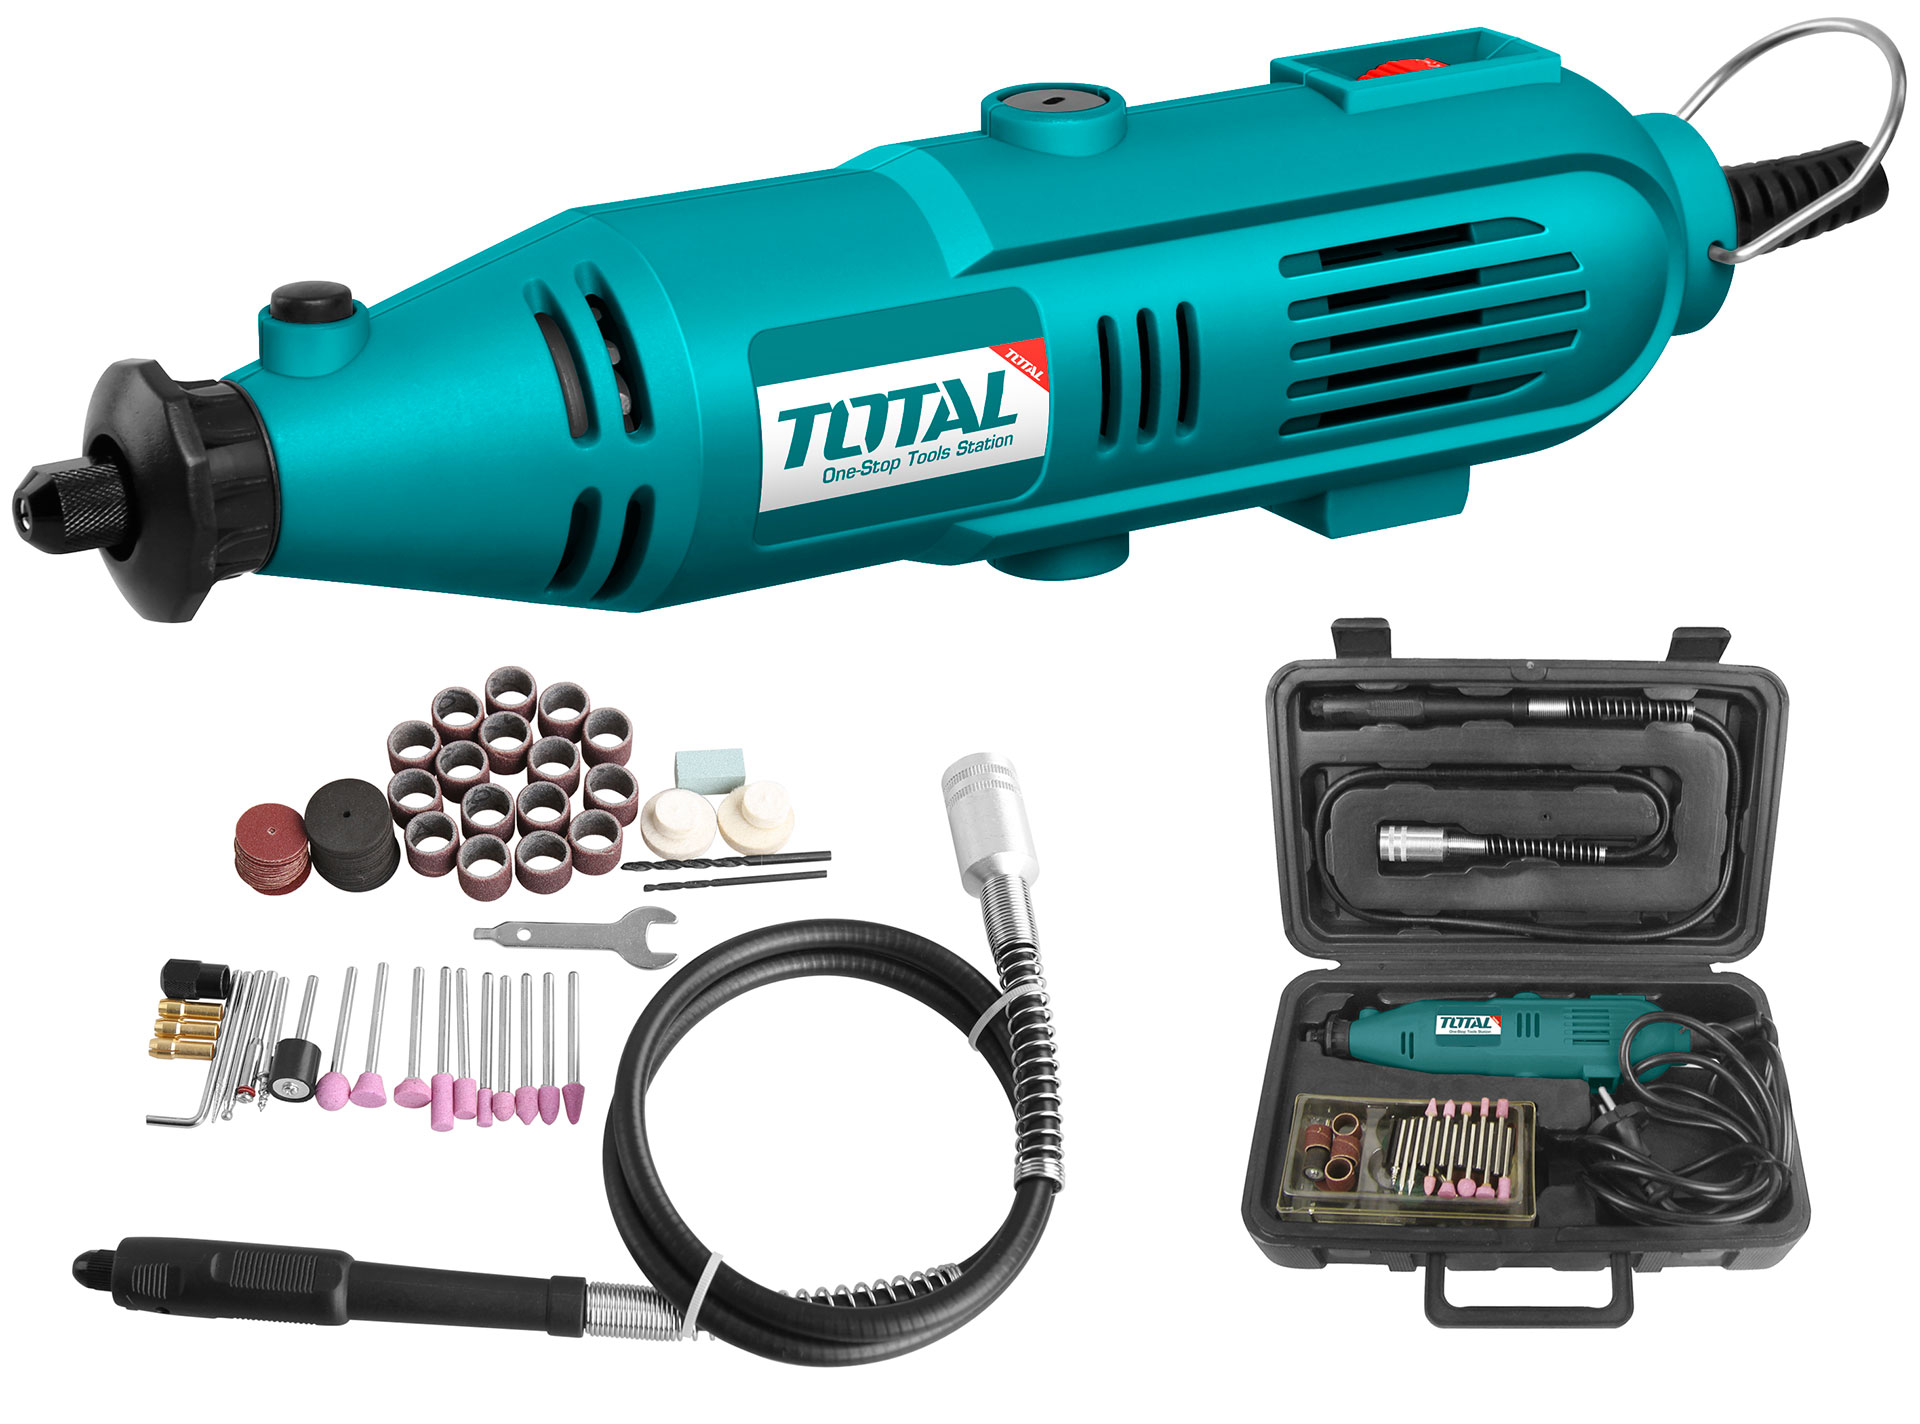 Total tools mini-grinder